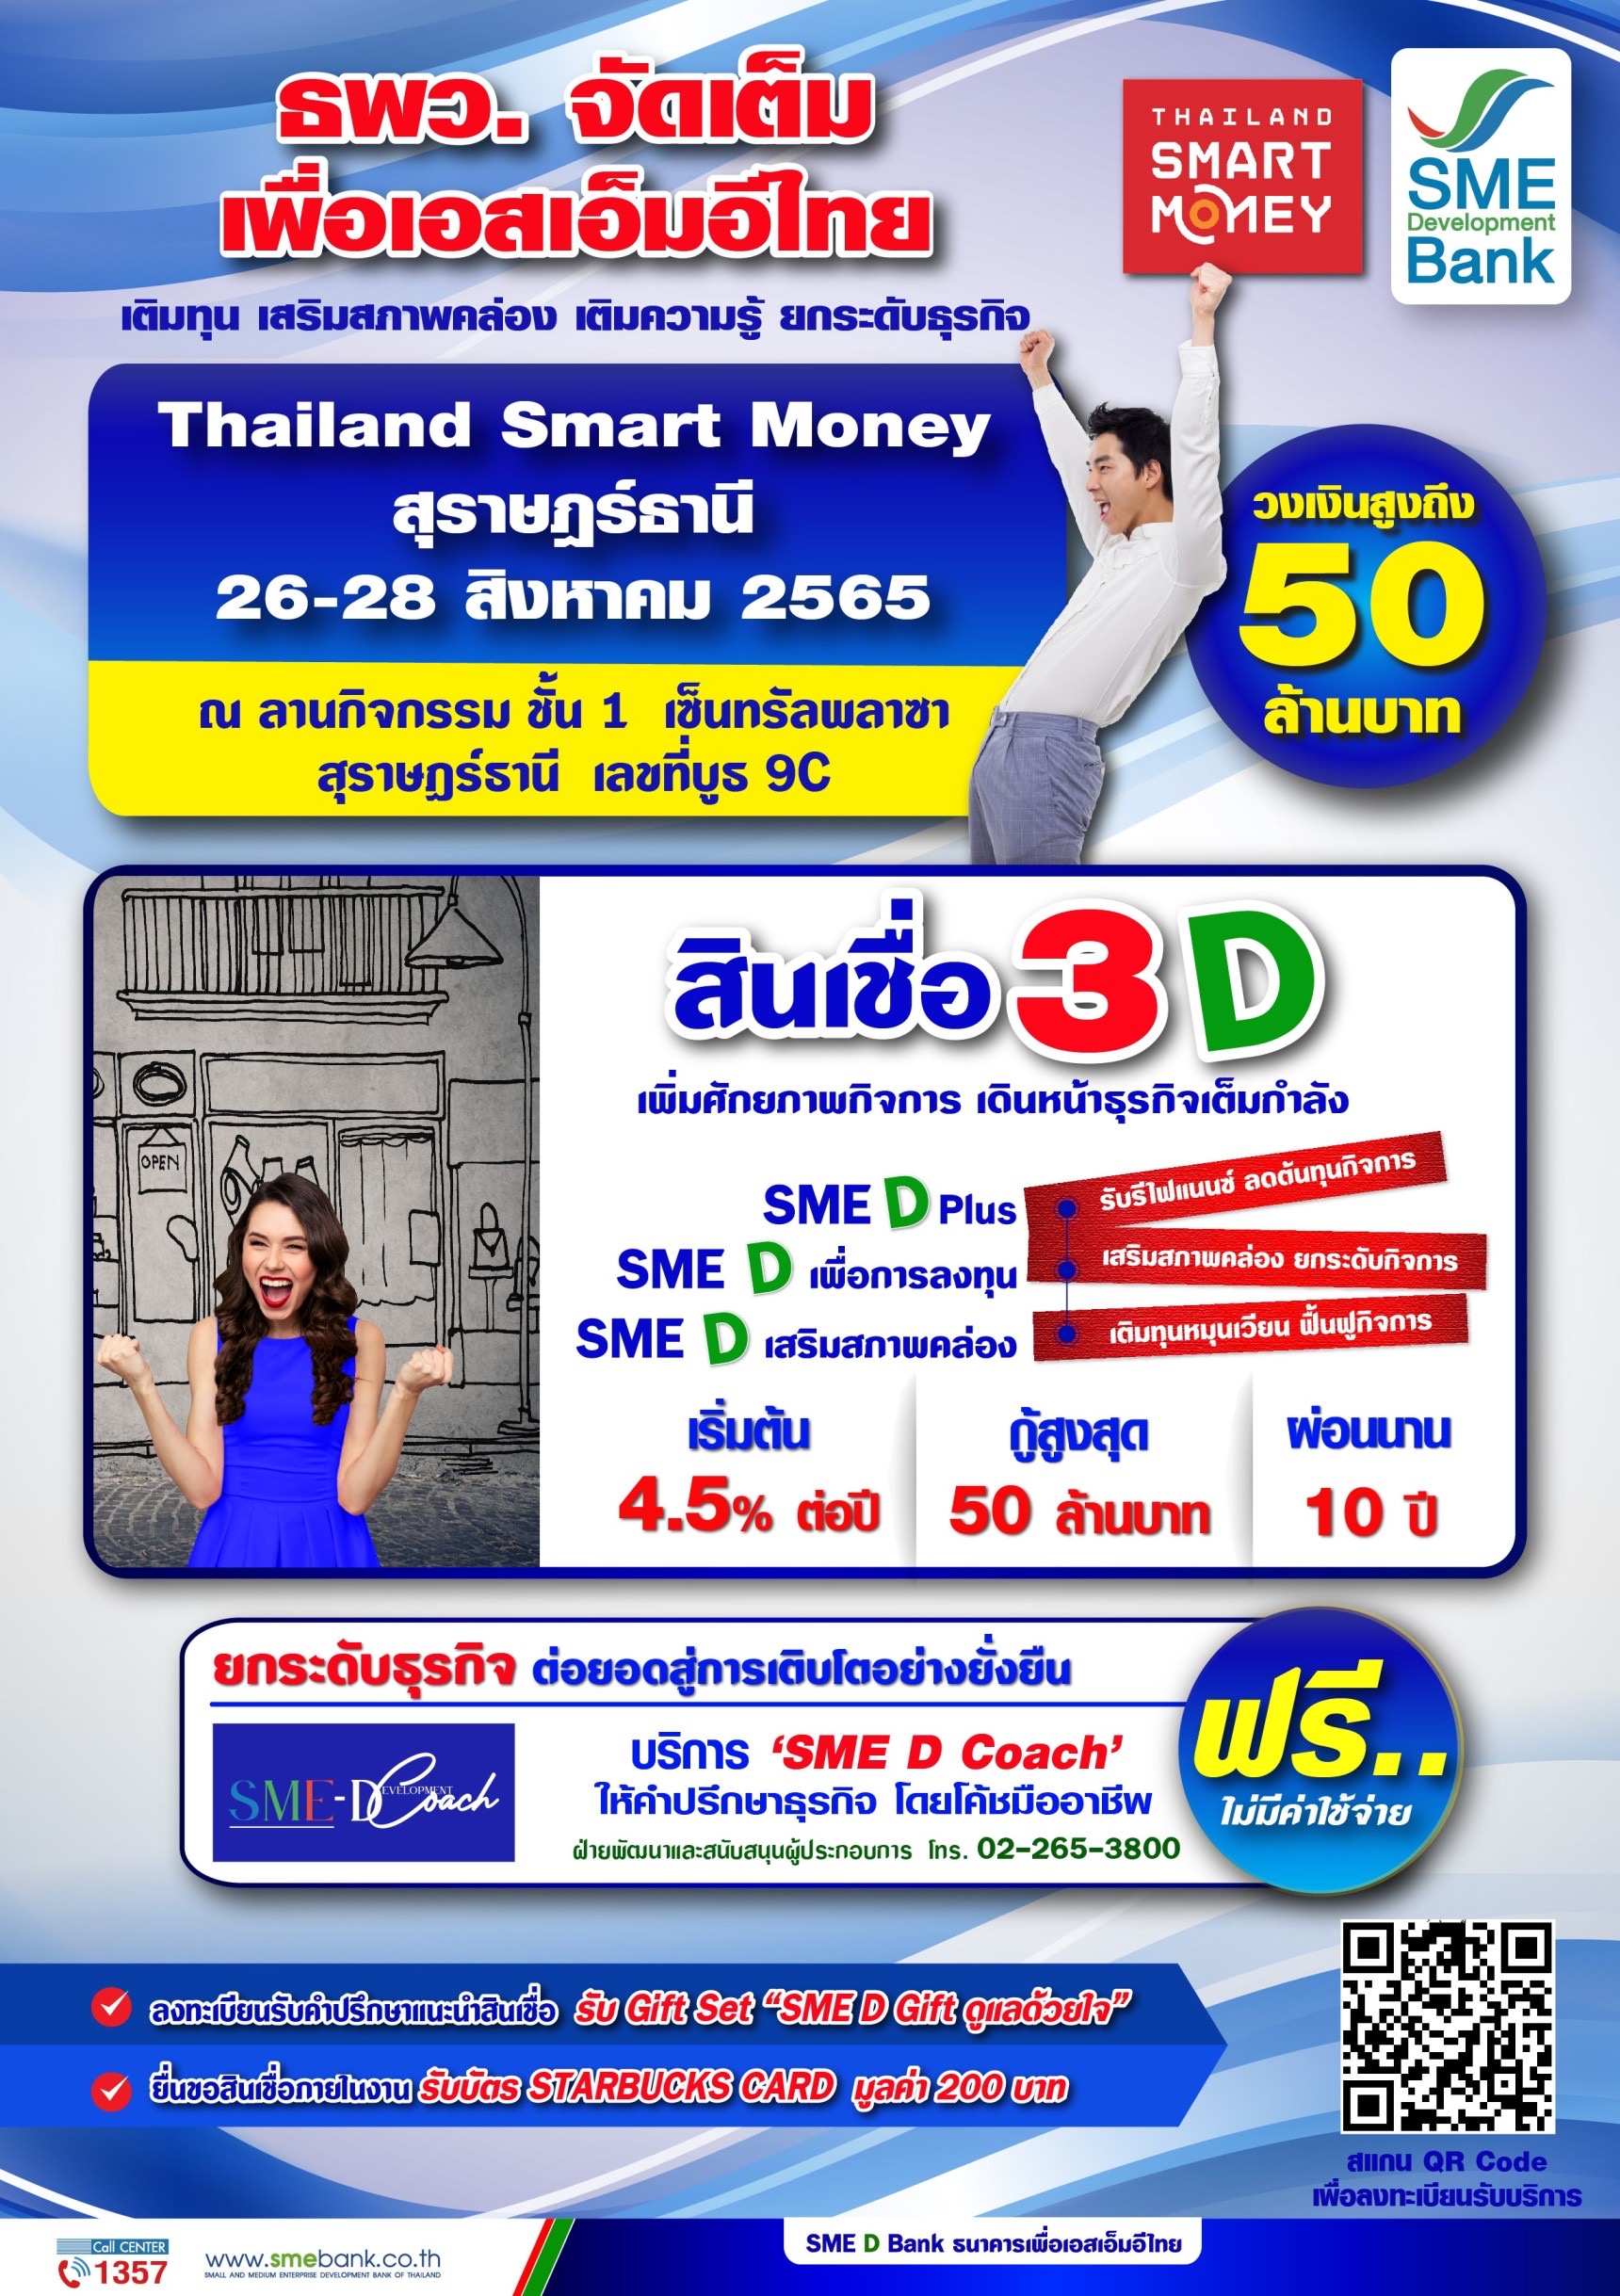 ธพว.จัดโปรพิเศษเพื่อ SMEsใต้ ในงาน ‘Thailand Smart Money’ จ.สุราษฎร์ธานี